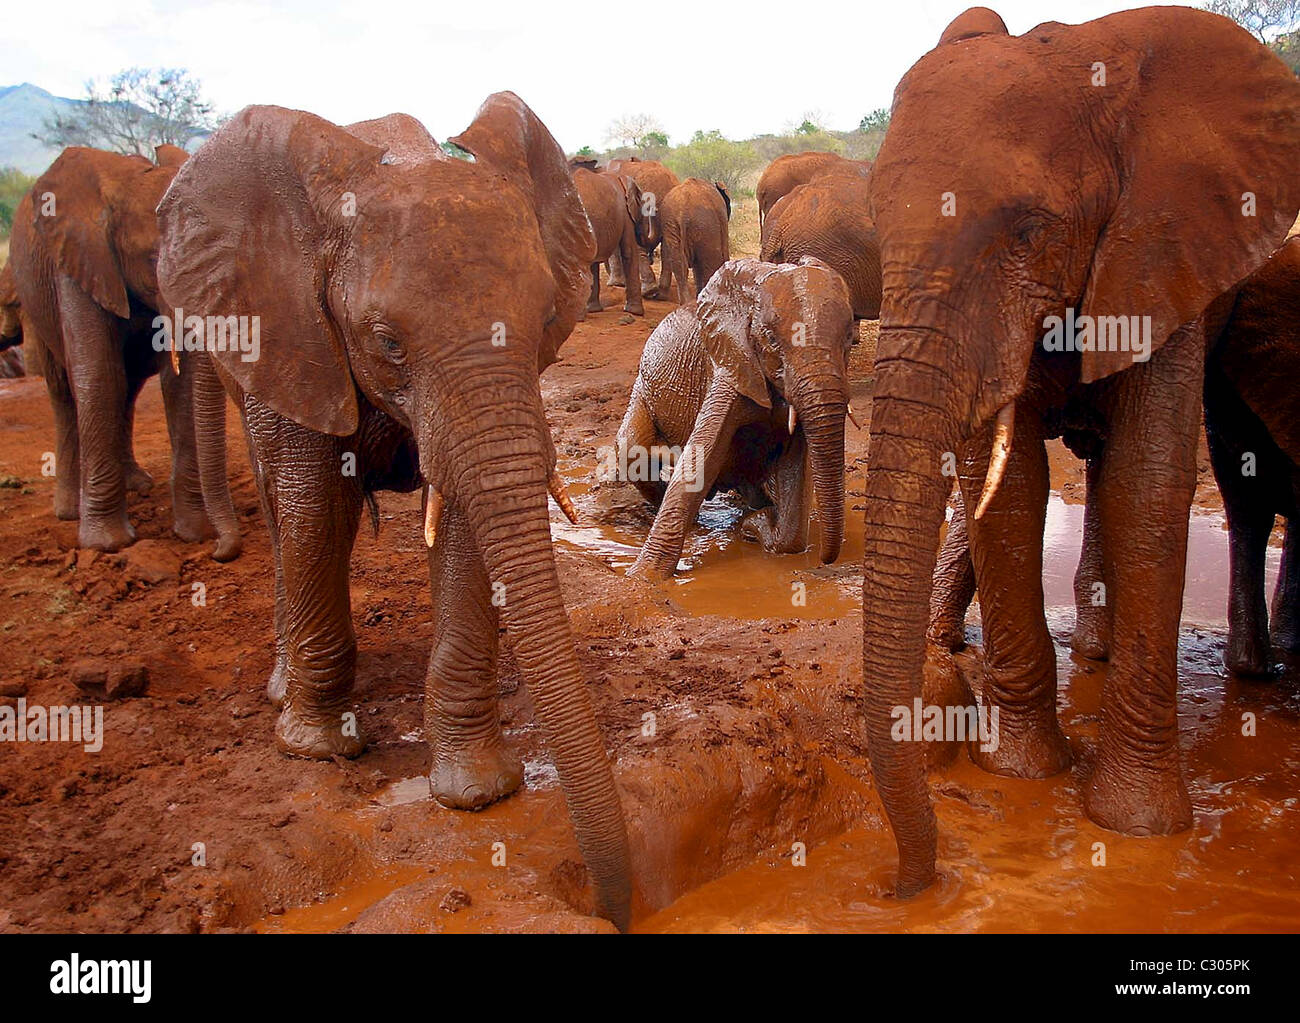 Allevamento di elefante africano (Loxodonta africana) TSAVO NATIONAL PARK. L'argilla rossa dà gli elefanti UNA COLORAZIONE ROSSA Foto Stock